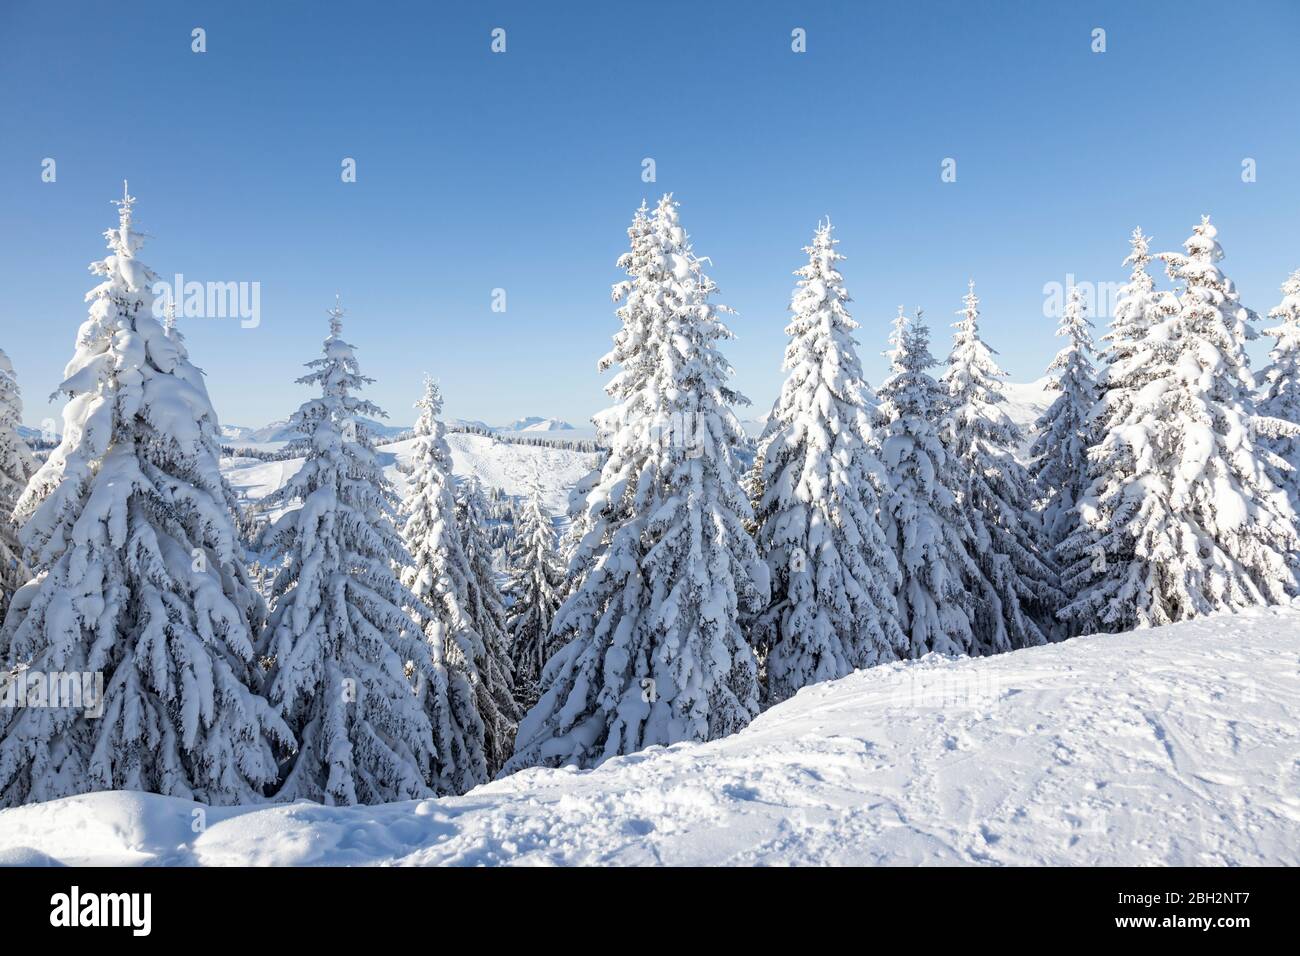 Los árboles de abeto cubiertos de nieve fresca y gruesa en Les Gets, Francia. Foto de stock